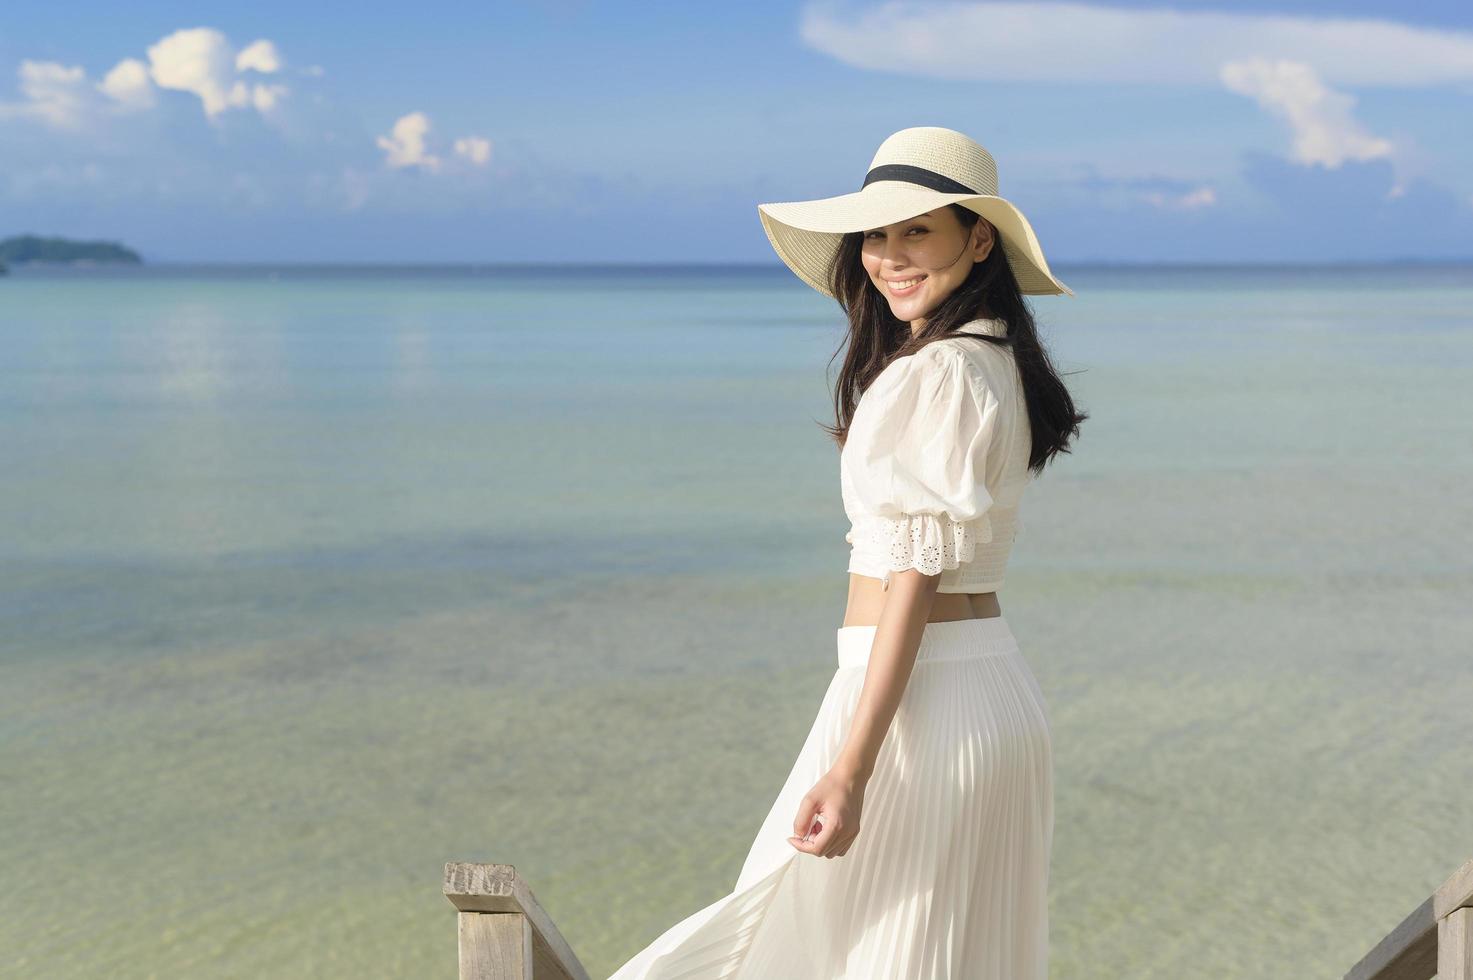 een gelukkige mooie vrouw in een witte jurk die geniet en ontspant op het strand, zomer en vakantie concept foto